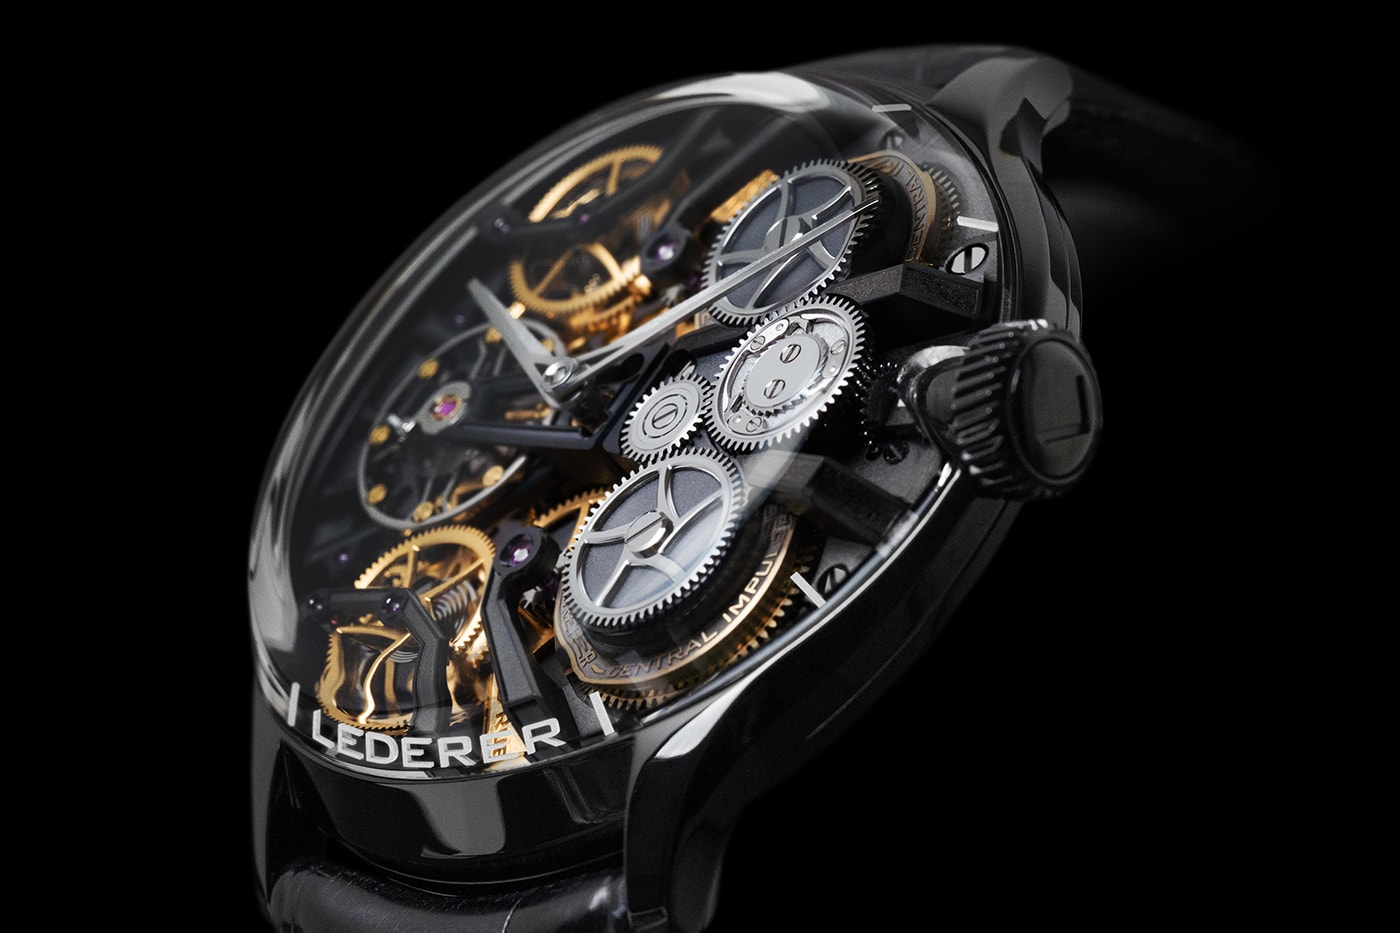 Bernhard Lederer Central Impulse Chronometer InVerto Limited Series Info